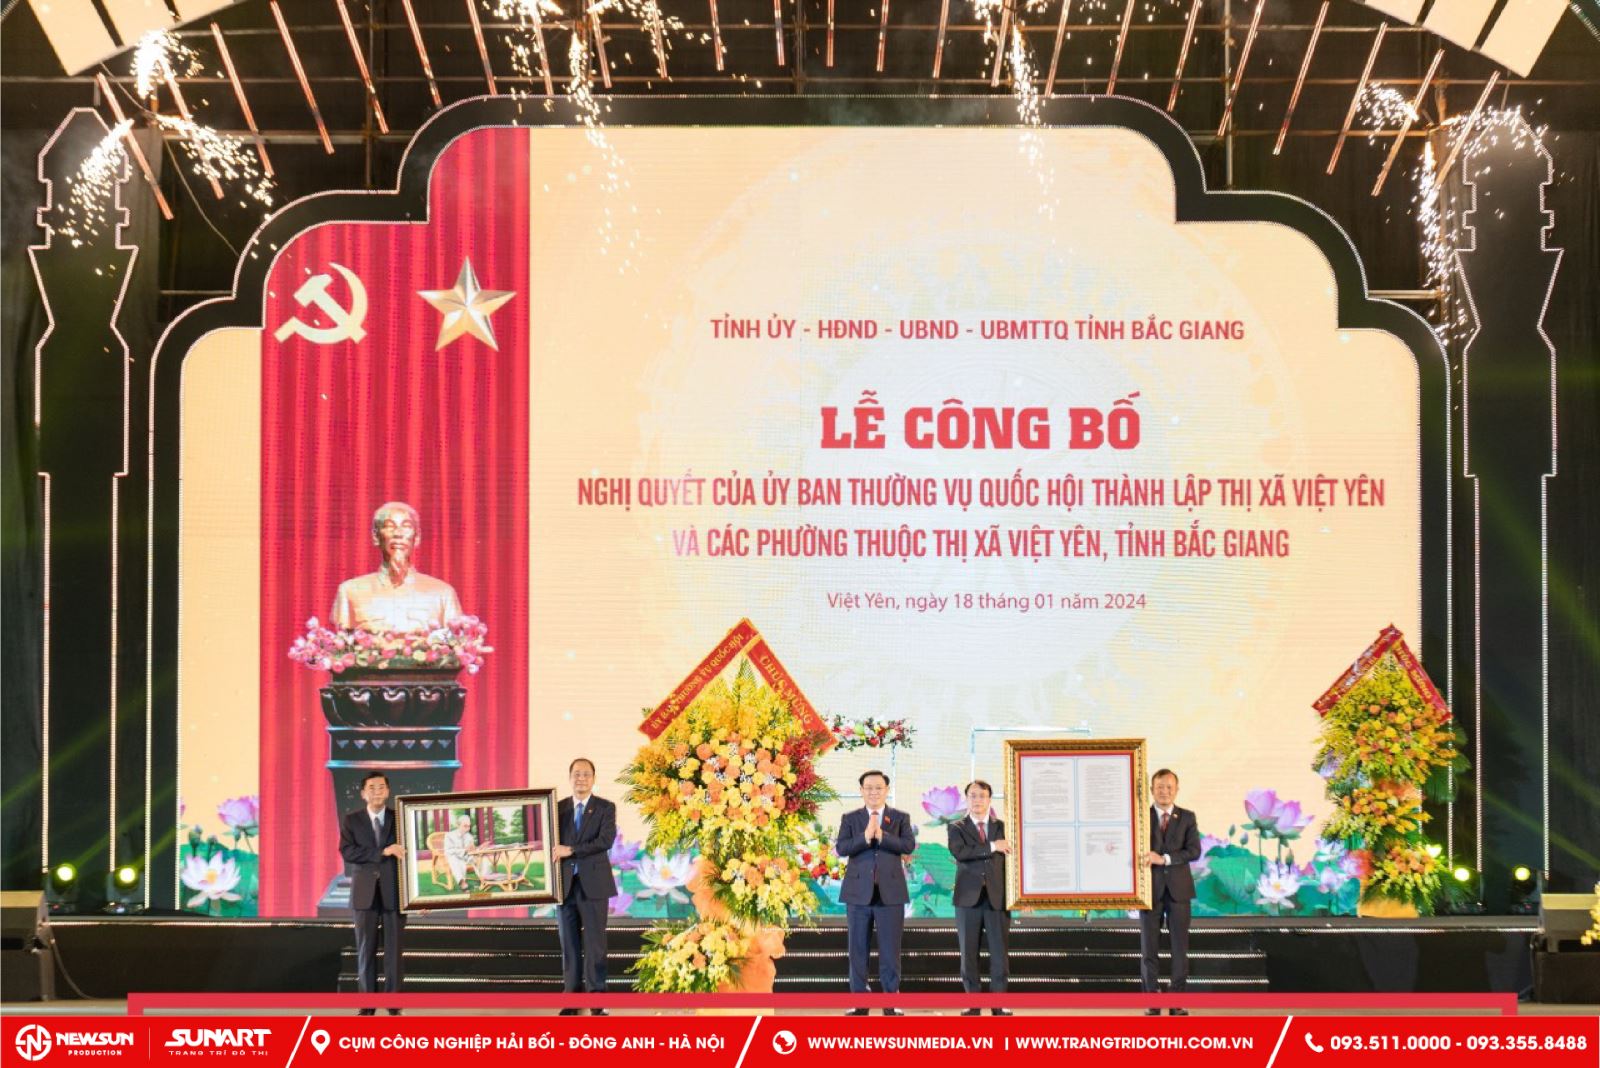 Thi Công Sấn Khấu Sự Kiện Nghị Quyết Thành Lập Thị Xã Việt Yên, Tỉnh Bắc Giang